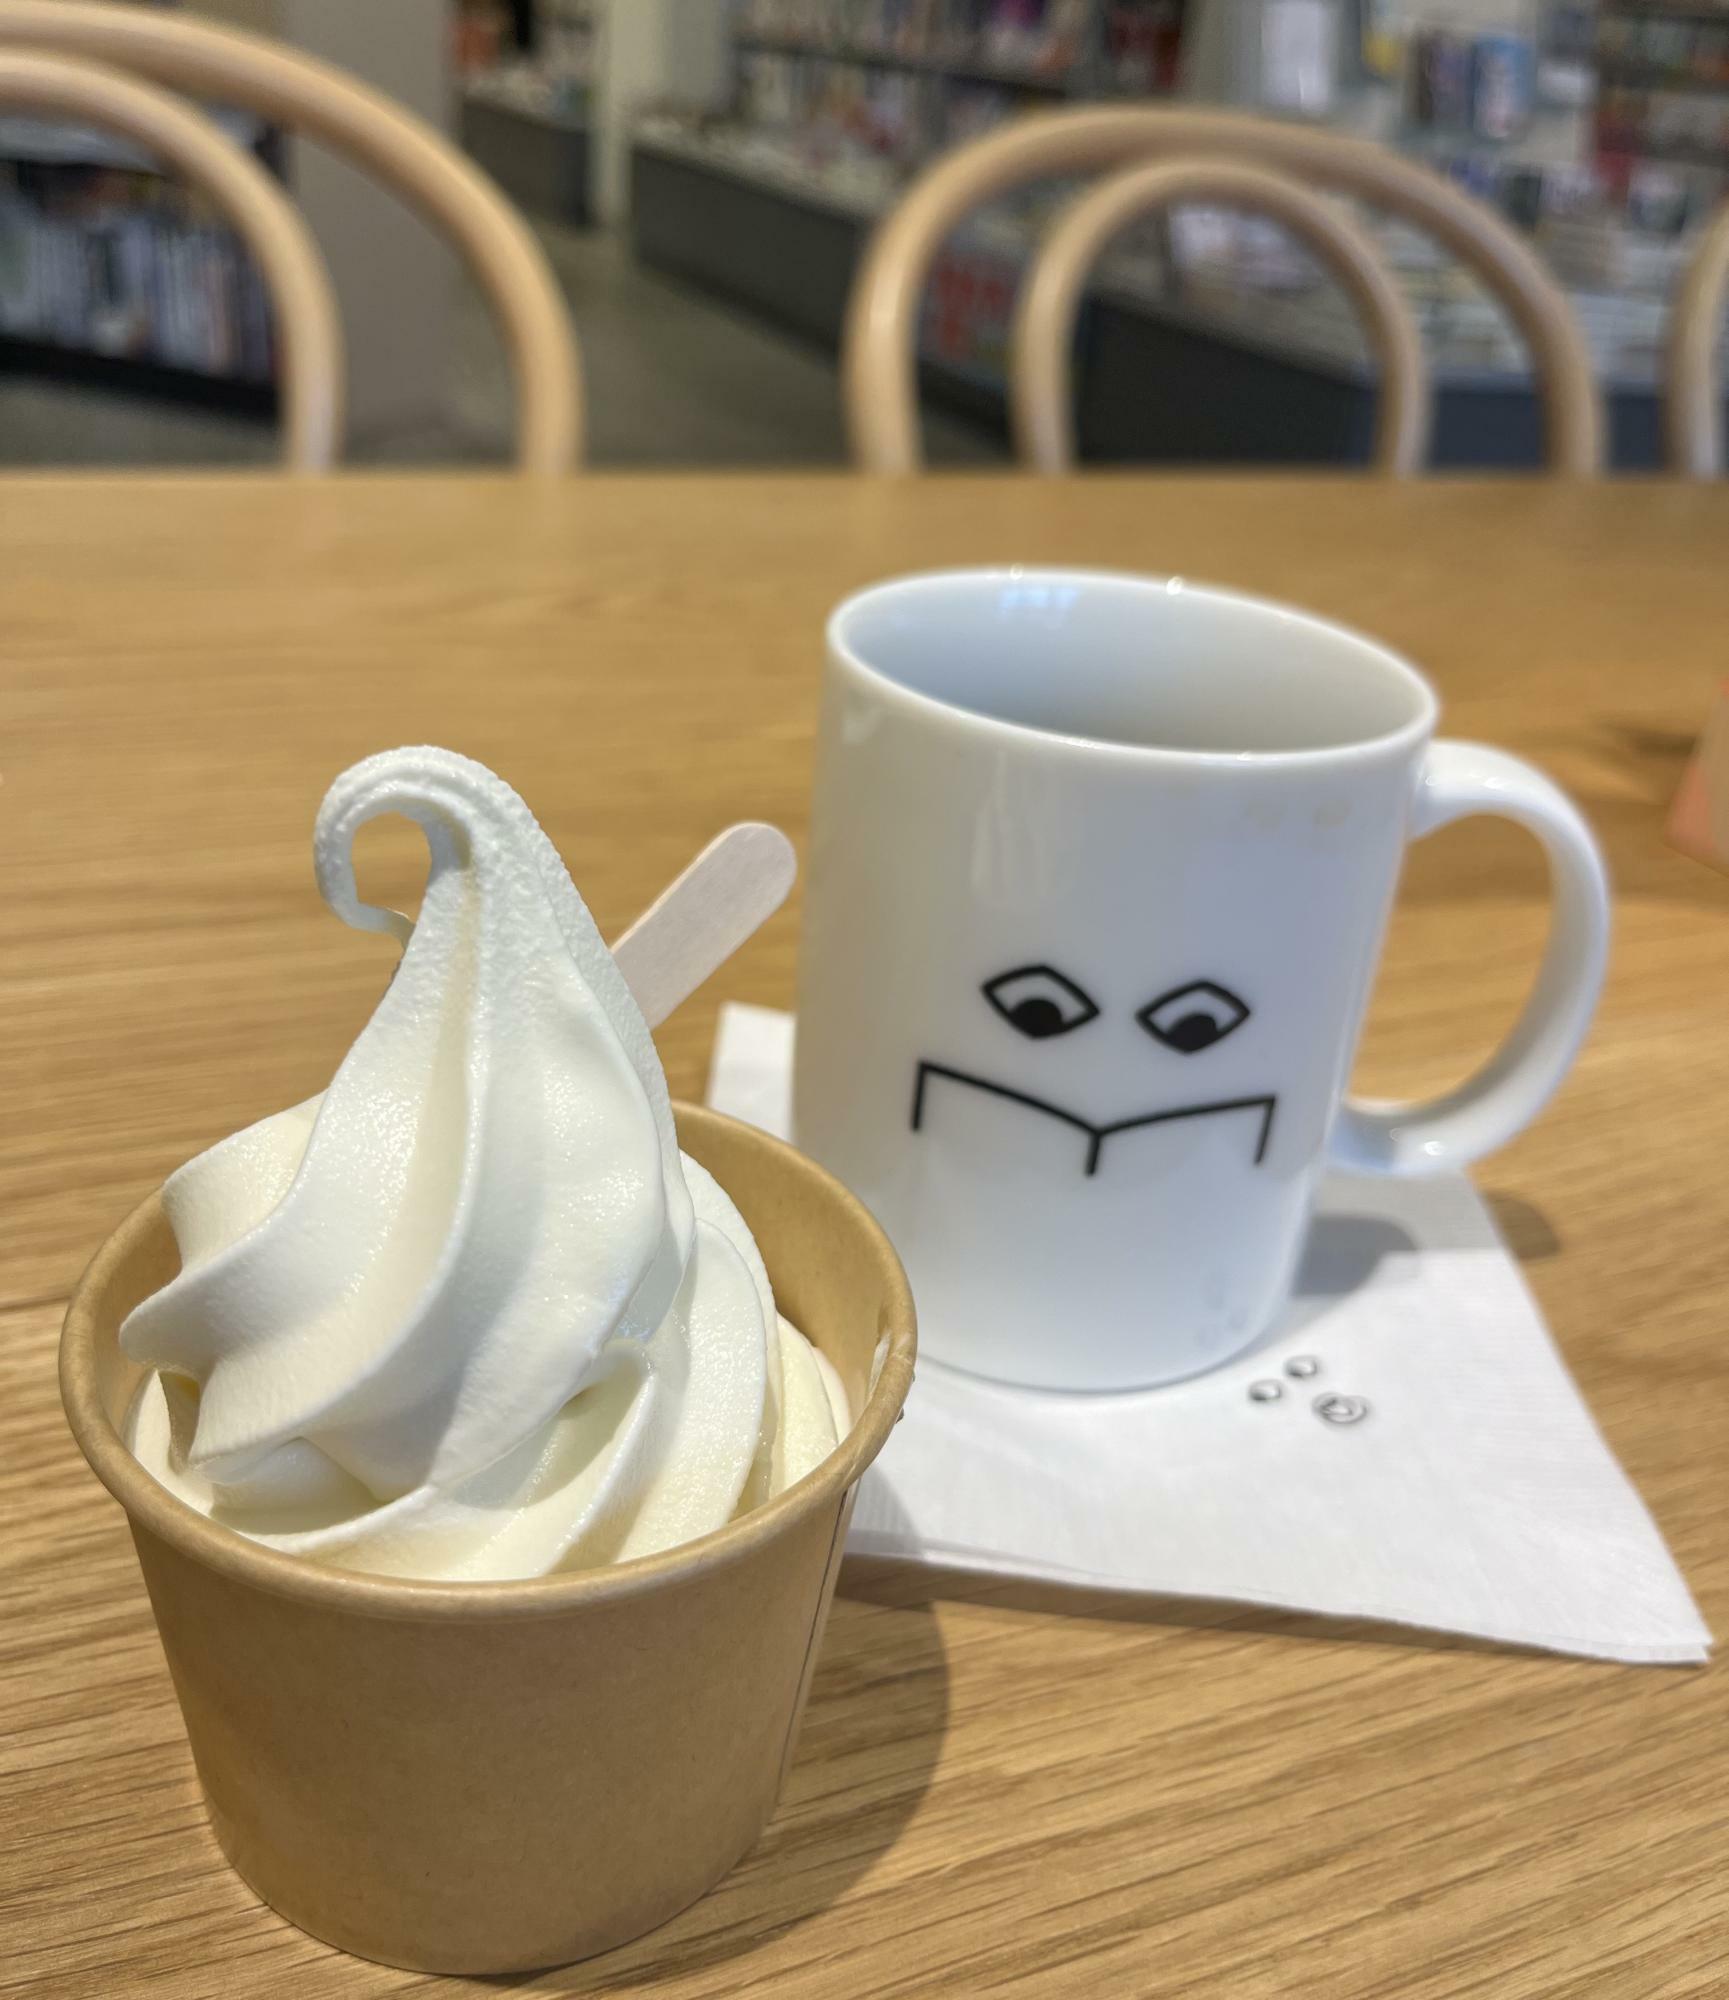 カフェを利用すると200円でミニソフトクリームが食べられます。濃厚で美味